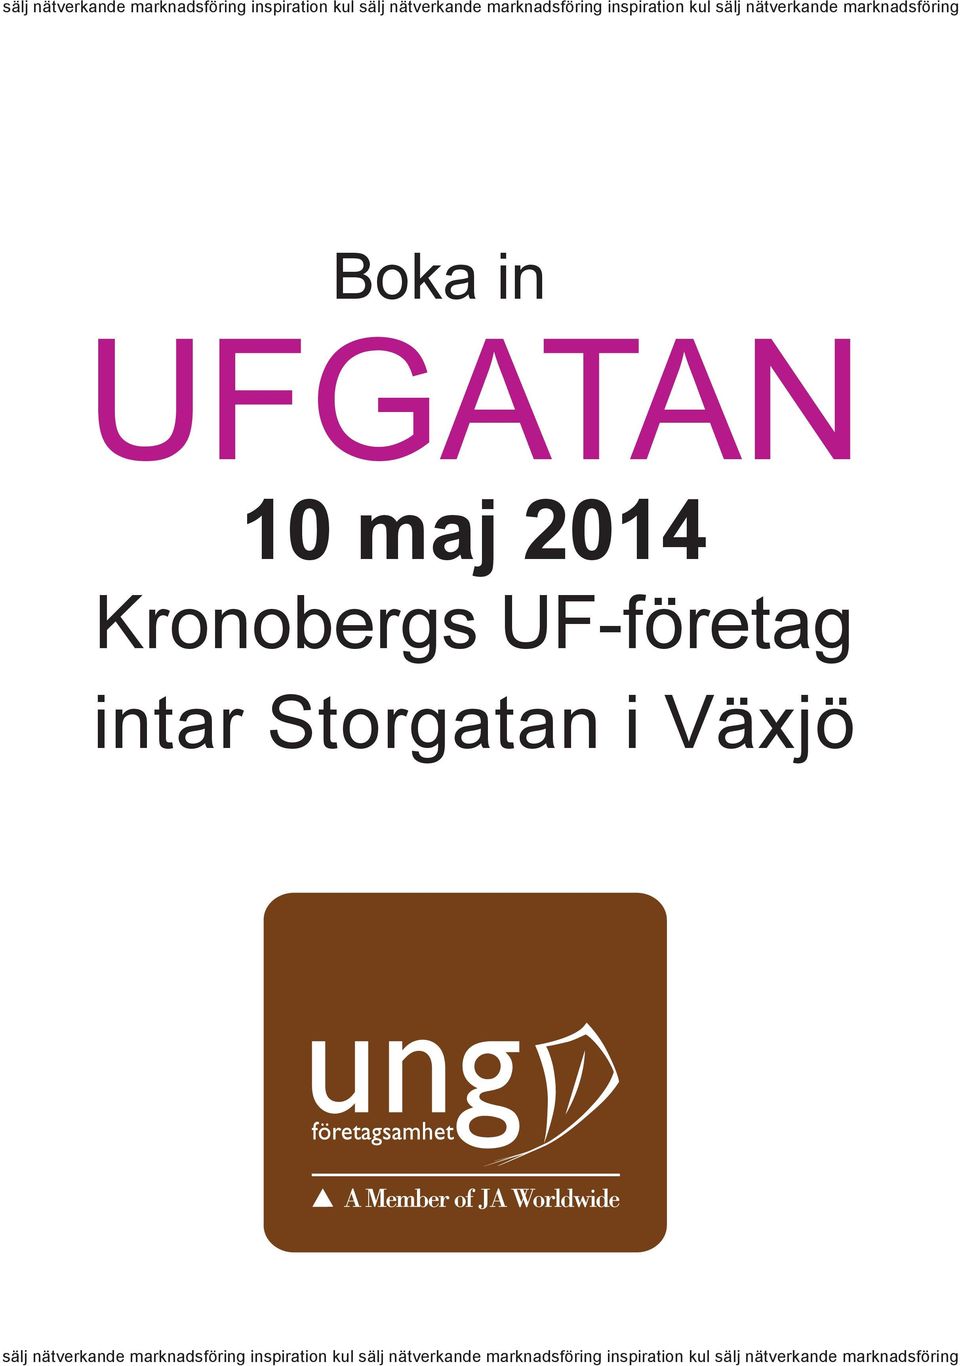 Kronobergs UF-företag intar Storgatan i Växjö  inspiration kul sälj nätverkande